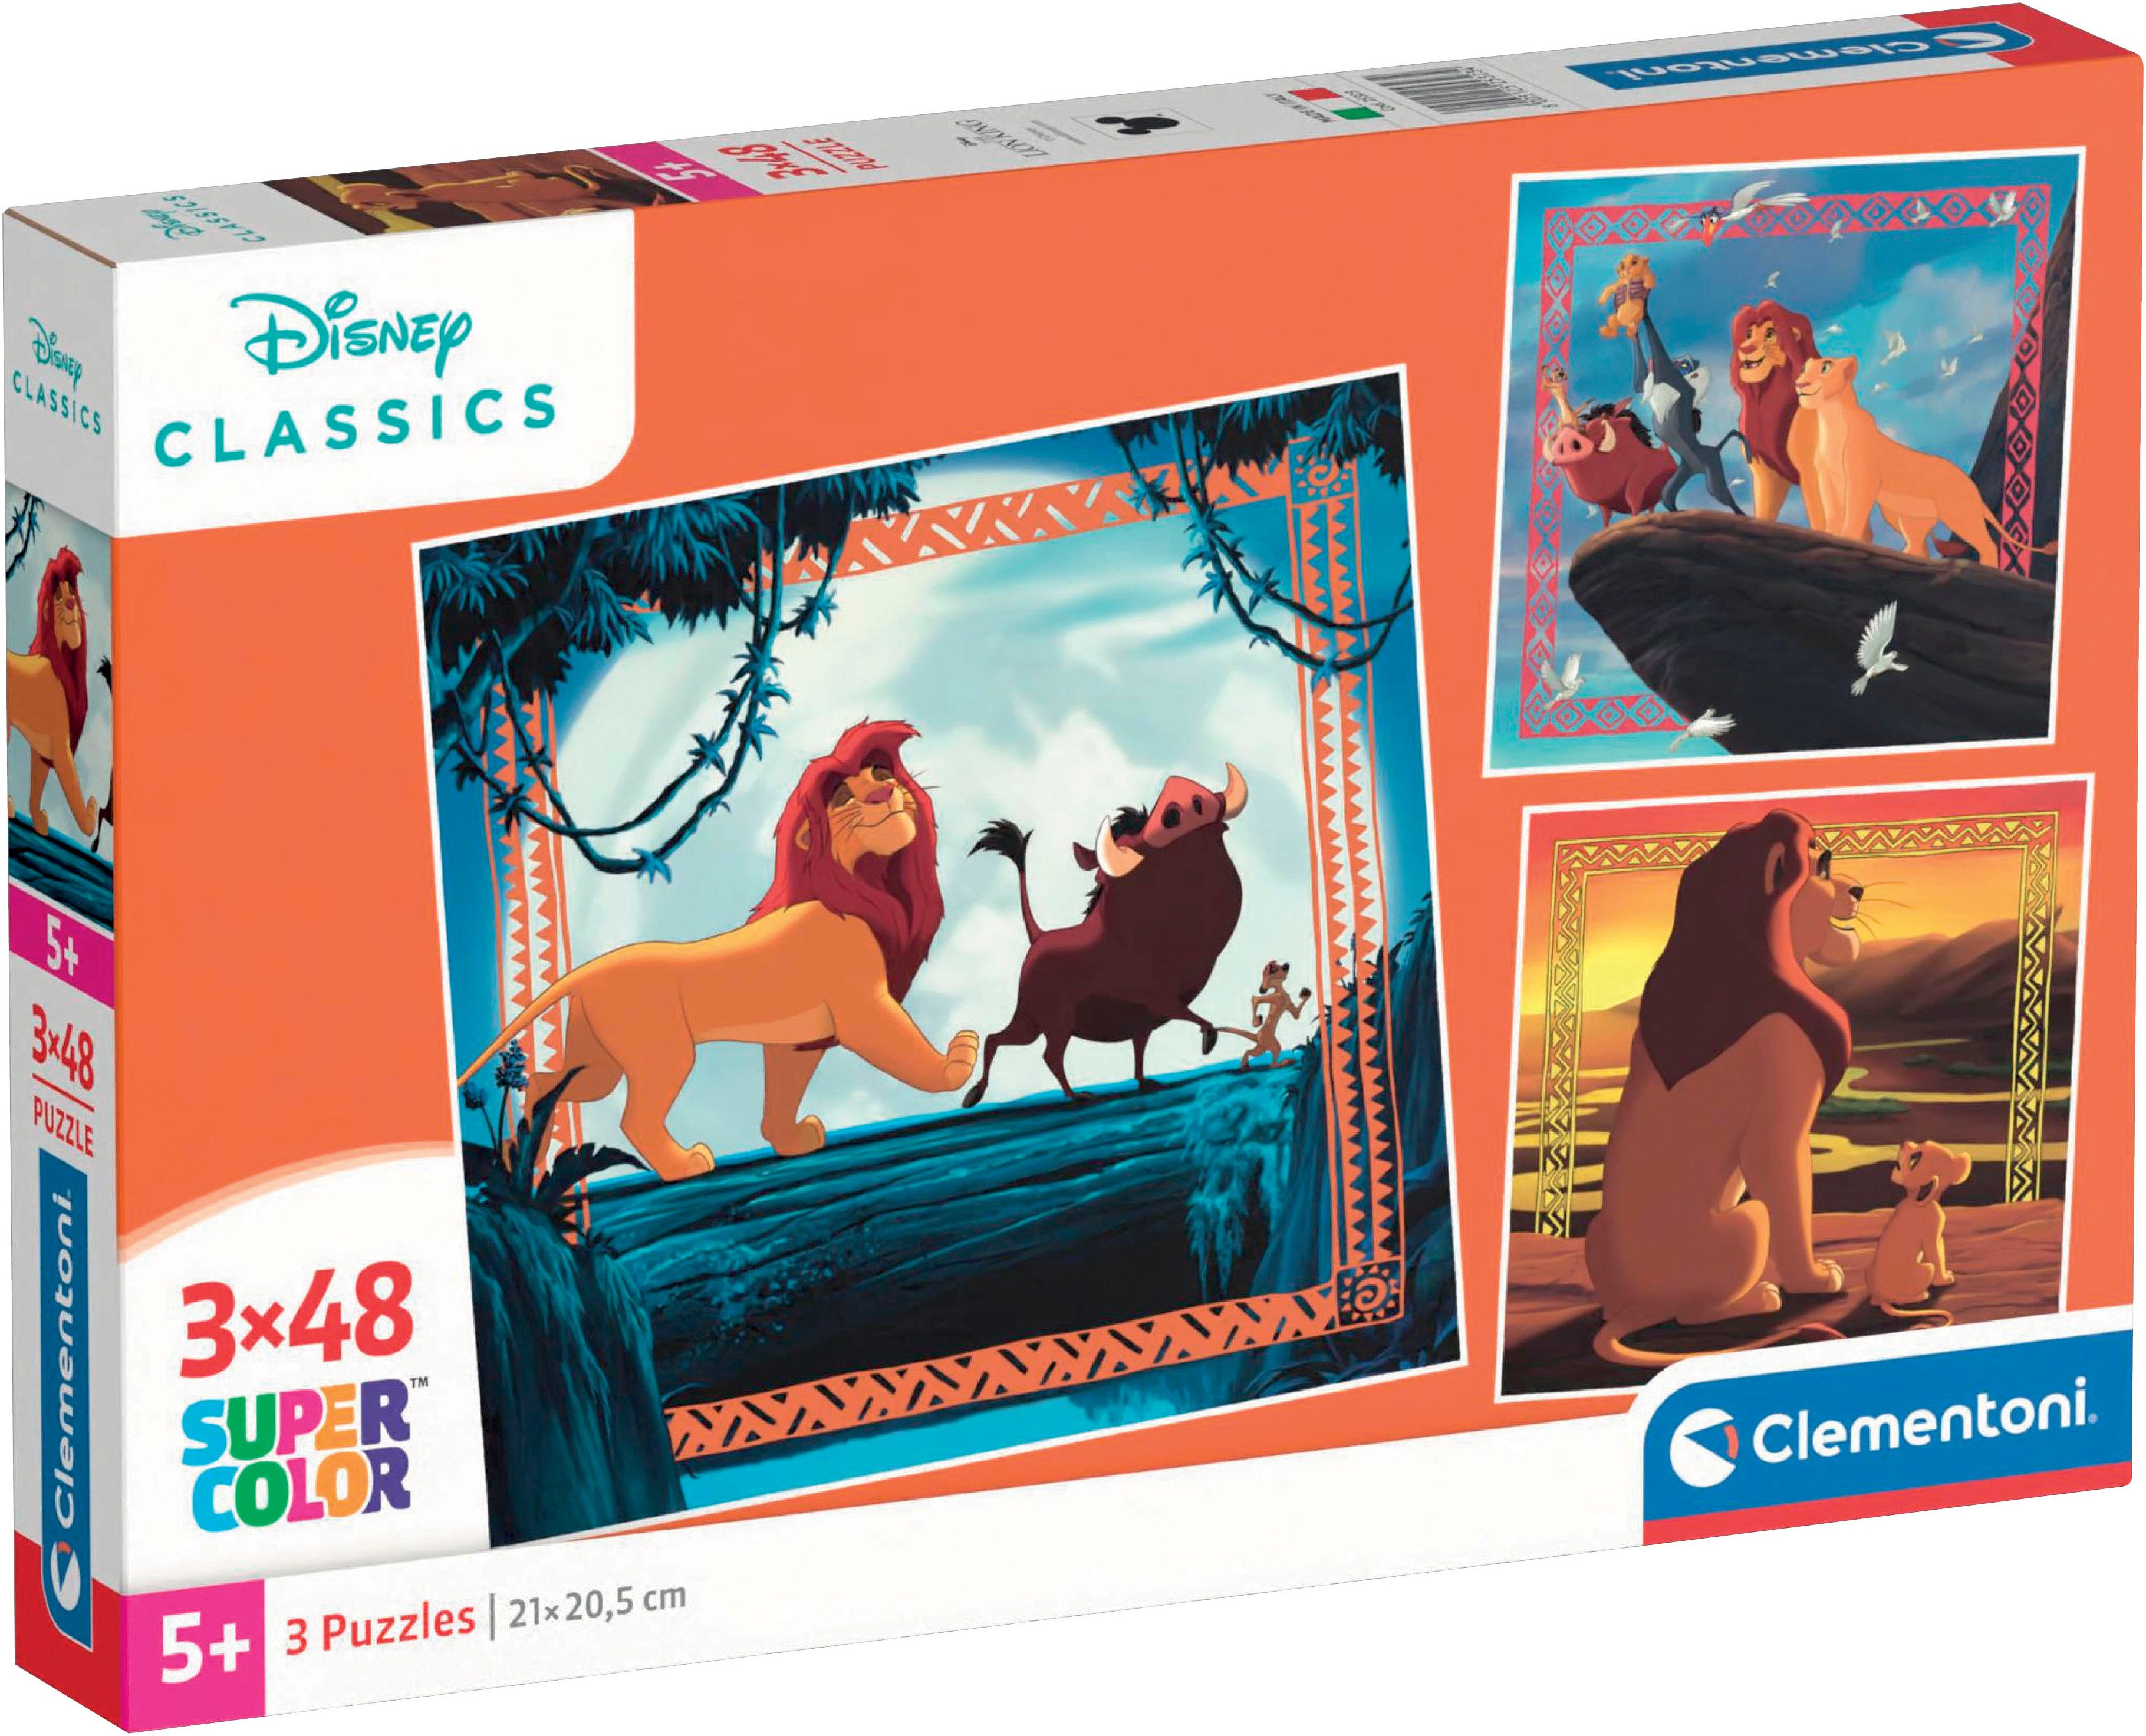 Clementoni® Puzzle König der Löwen, 3 x 48 T Supercolor, 144 Puzzleteile, Made in Europe; FSC® - schützt Wald - weltweit